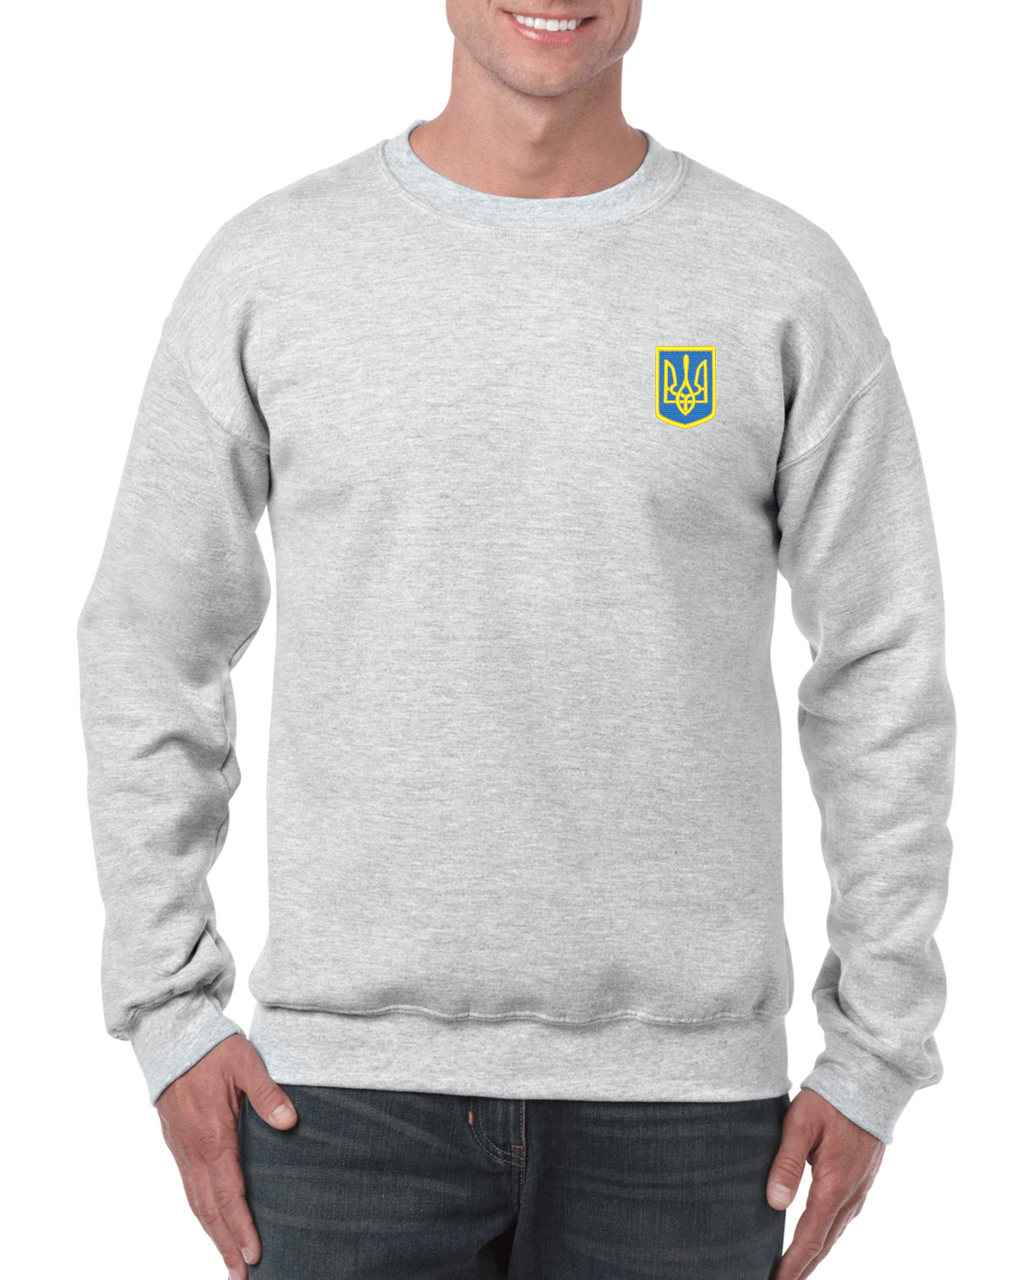 Adult unisex sweatshirt with Ukrainian emblem embroidery